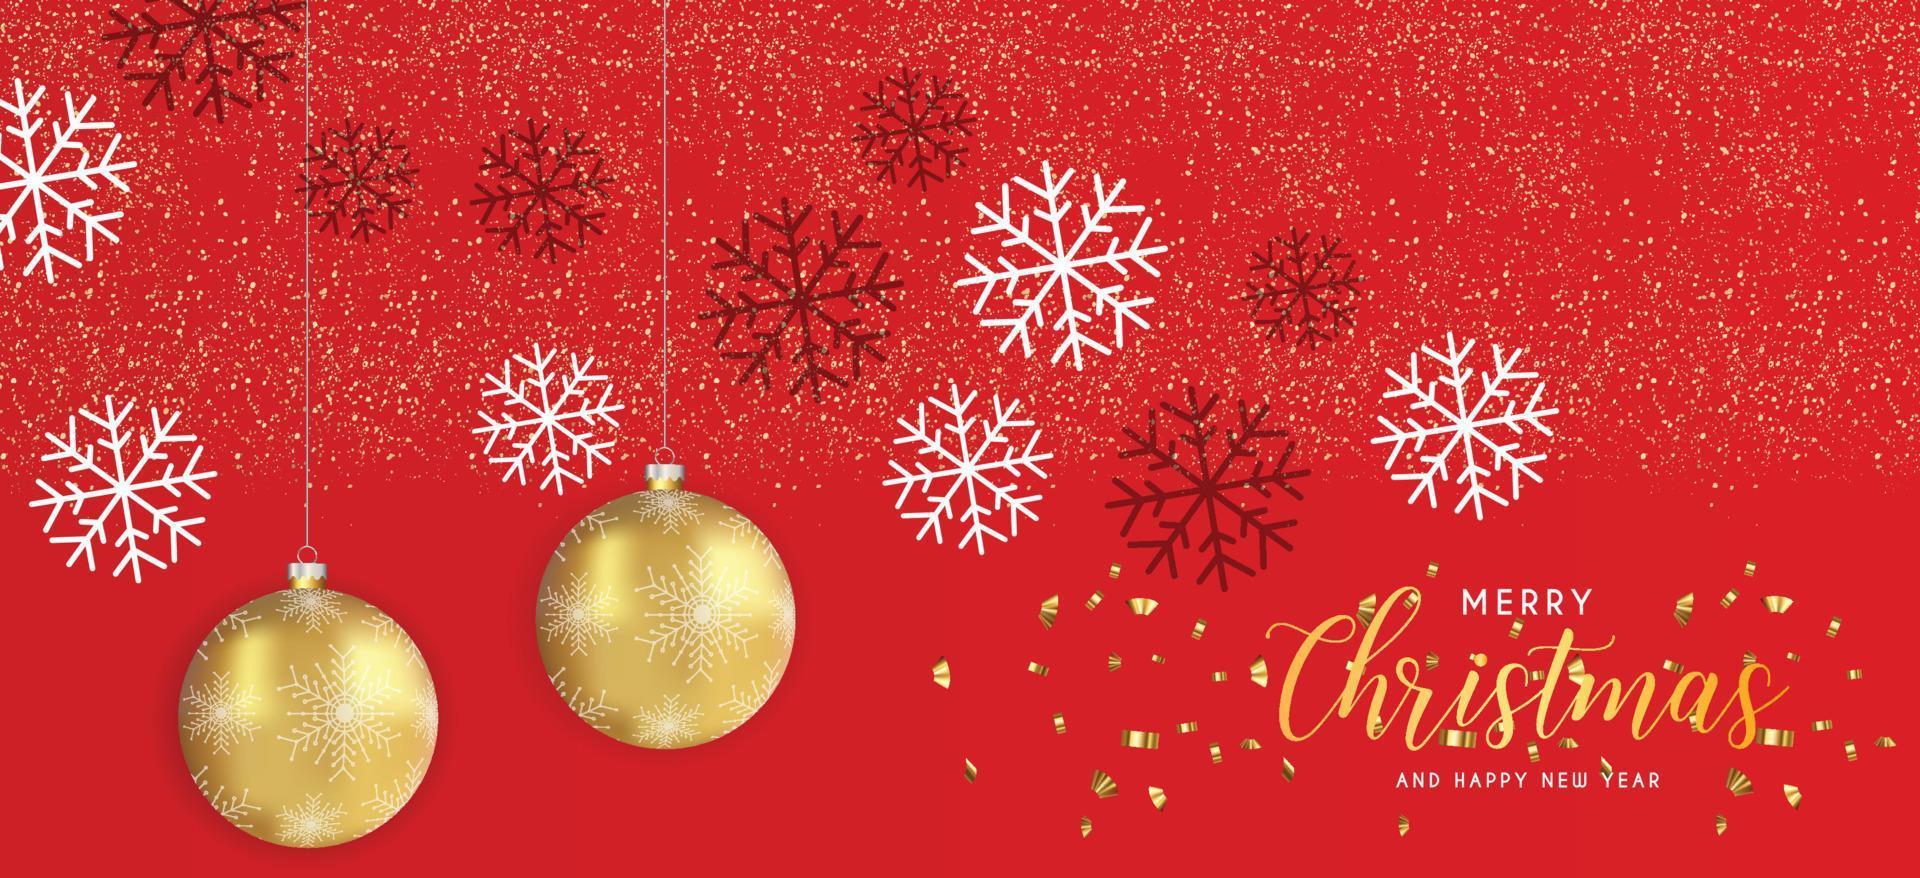 fondo rojo navideño festivo con adornos navideños dorados y brillos dorados. ilustración vectorial vector